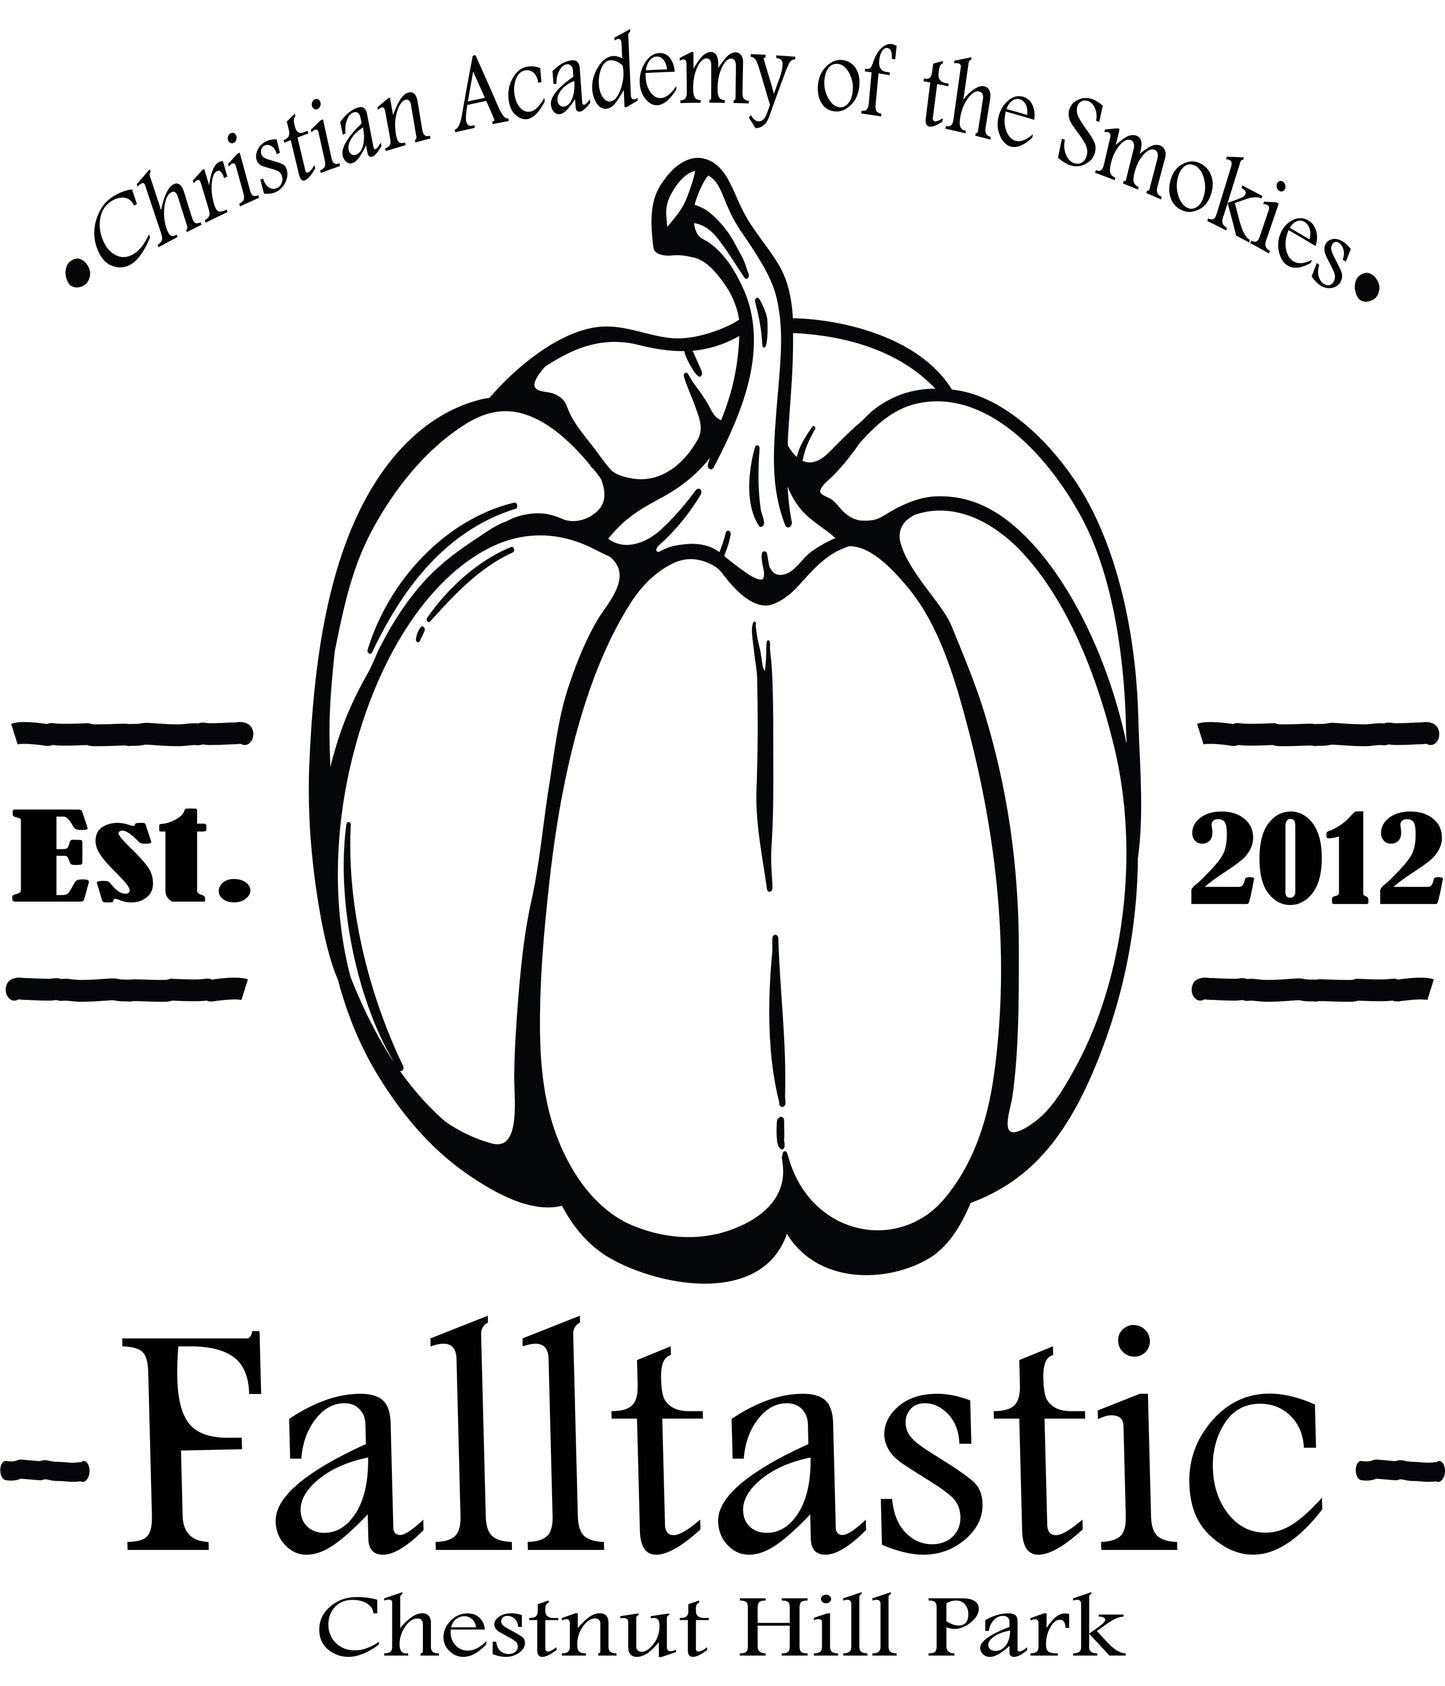 Falltastic @ Chestnuthill